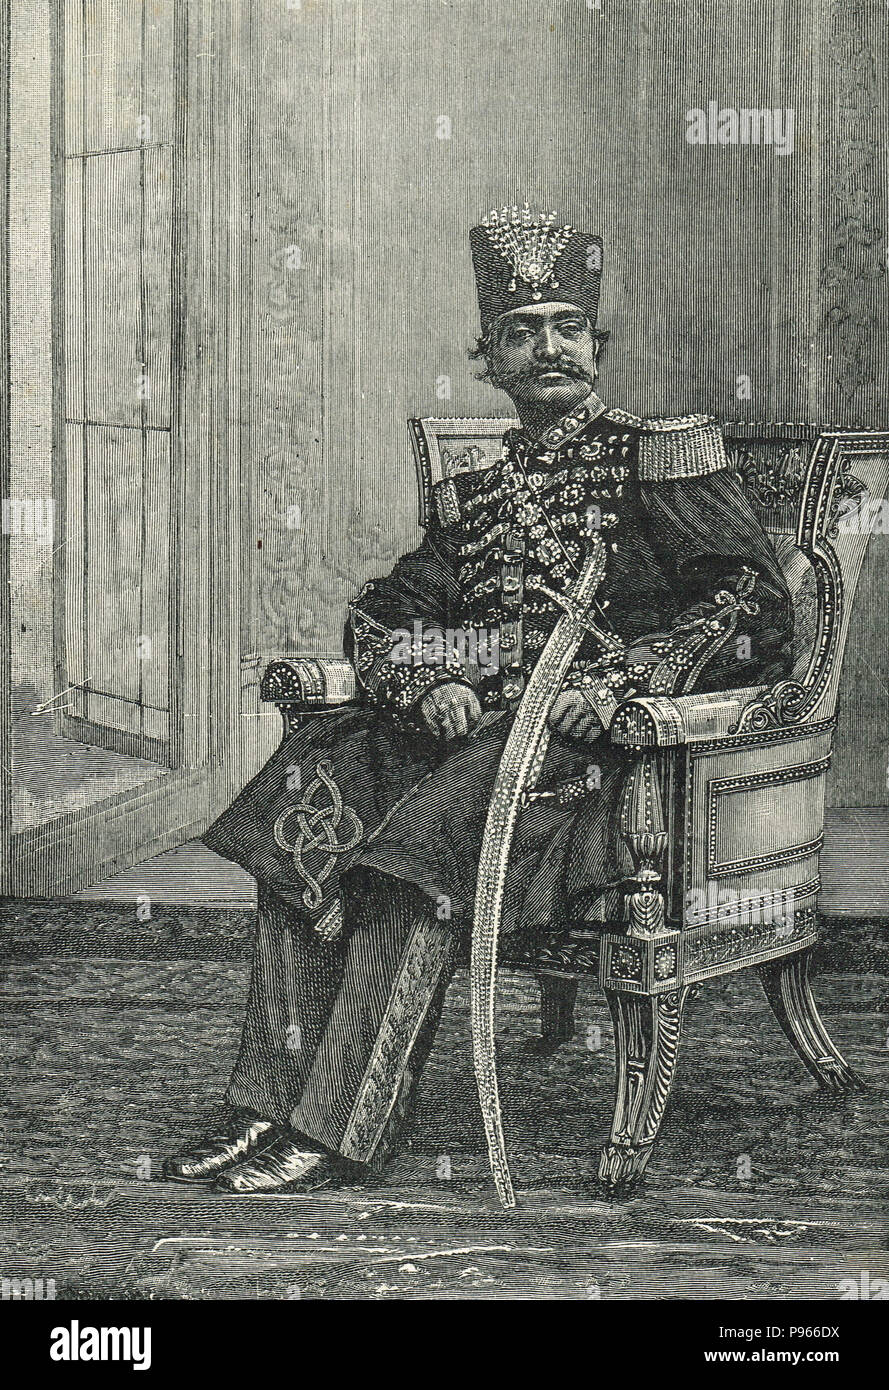 Naser al-Din Shah, Shah de Perse Qajar, également connu sous le nom de Nassereddin Shah Qajar, était le roi de Perse à partir du 5 septembre 1848 au 1 mai 1896 lorsqu'il a été assassiné Banque D'Images